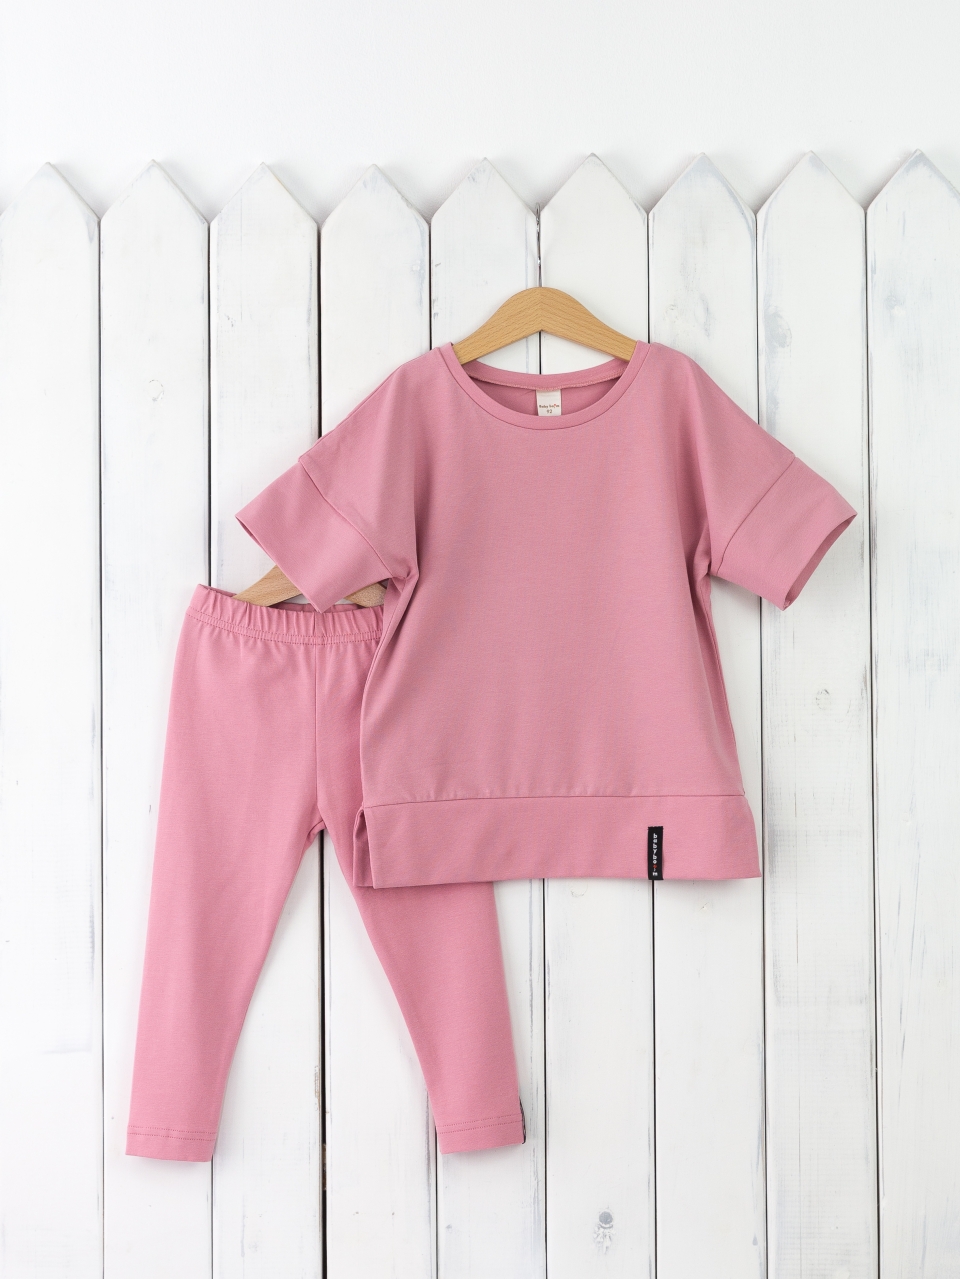 КД352/11-К Комплект для девочки р.98 футболка+легинсы/розовый зефир Бэби Бум